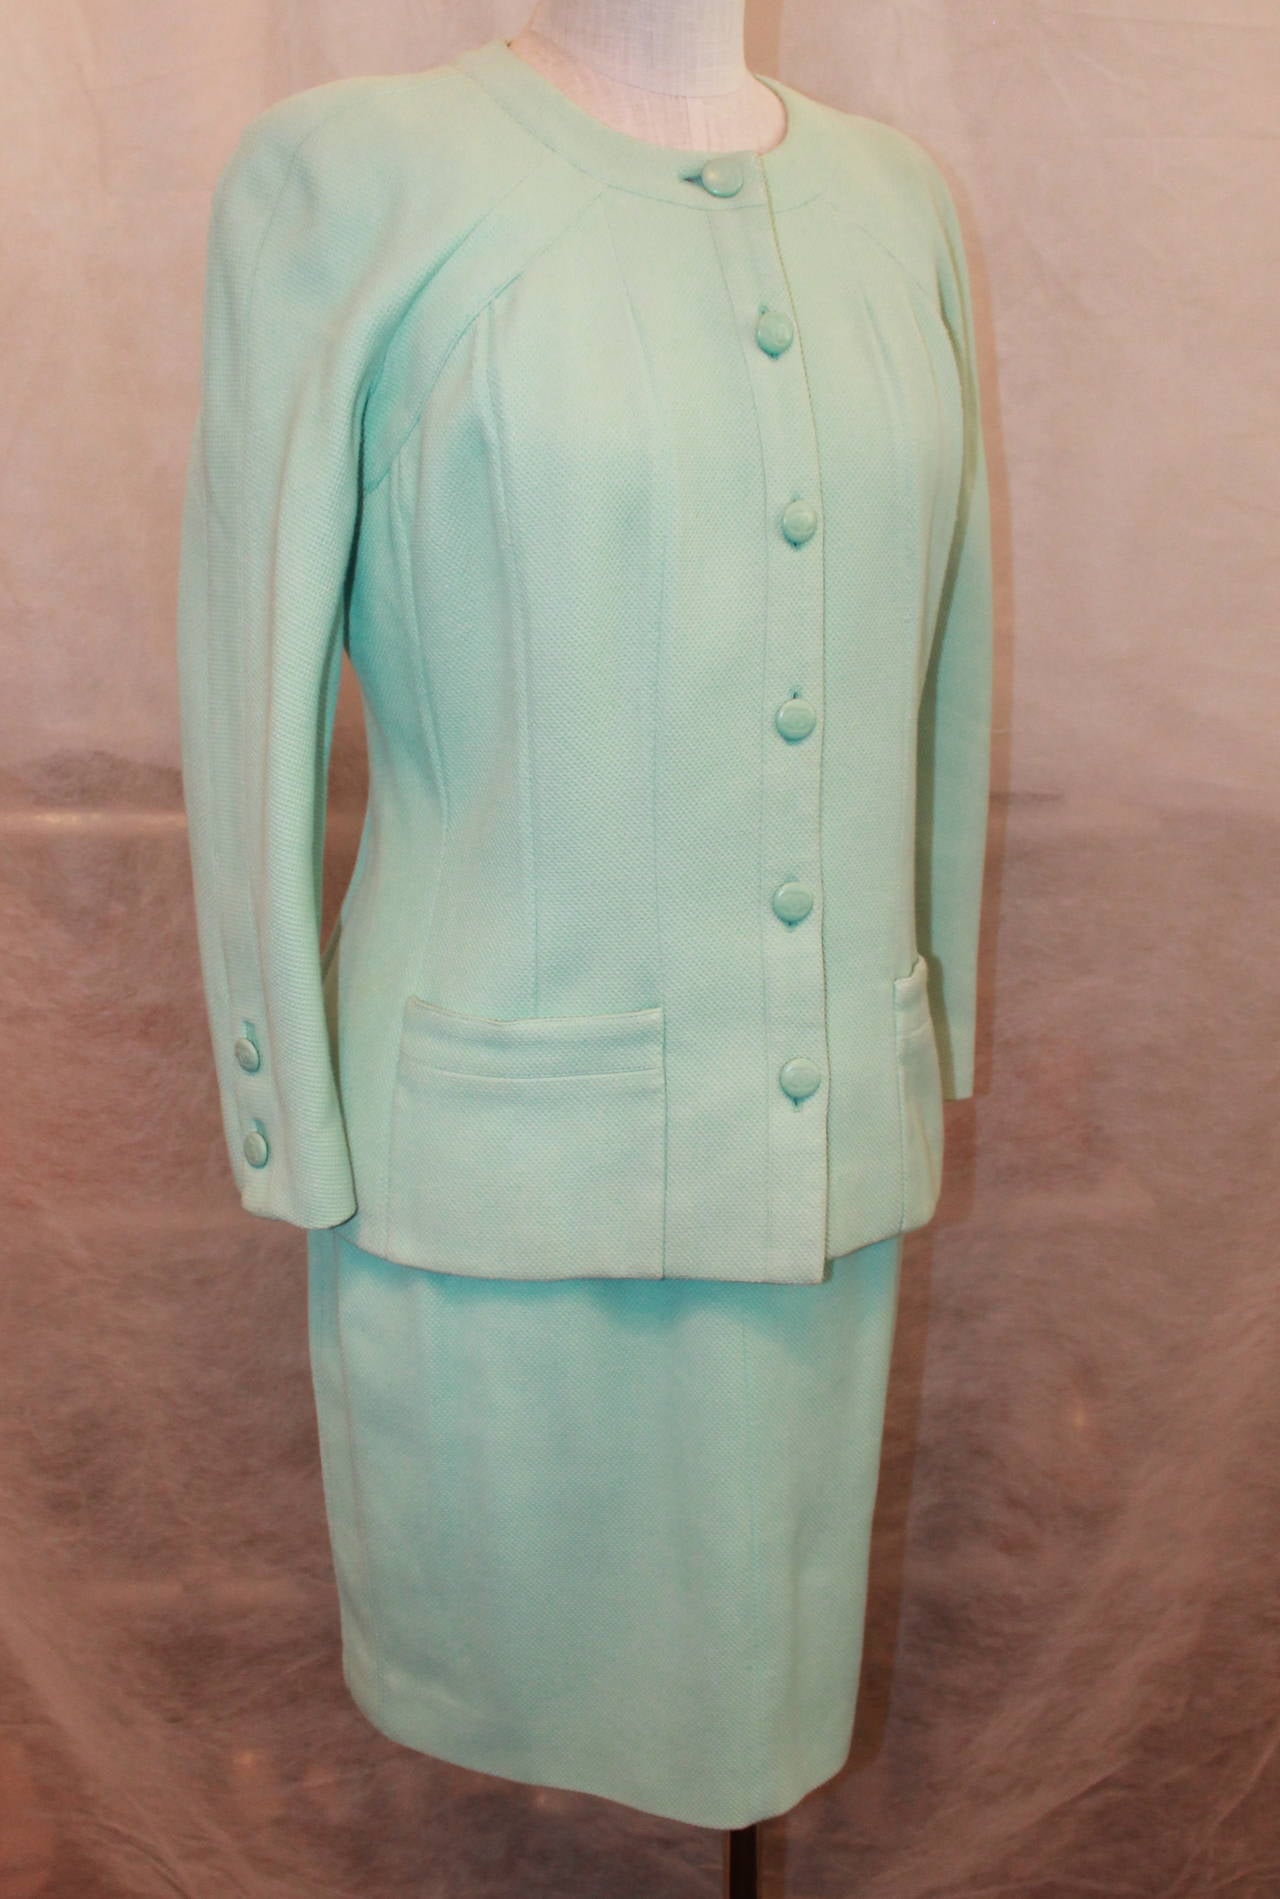 Chanel 1980's Vintage Aqua Single Breasted Rock Anzug - 6. Es ist in sehr gutem Zustand und ist ein Baumwoll-Piqué-Stoff mit einem Seidenfutter. Die Jacke hat 2 Vordertaschen an der Unterseite.

Abmessungen:
Jacke 
Büste- 36.5